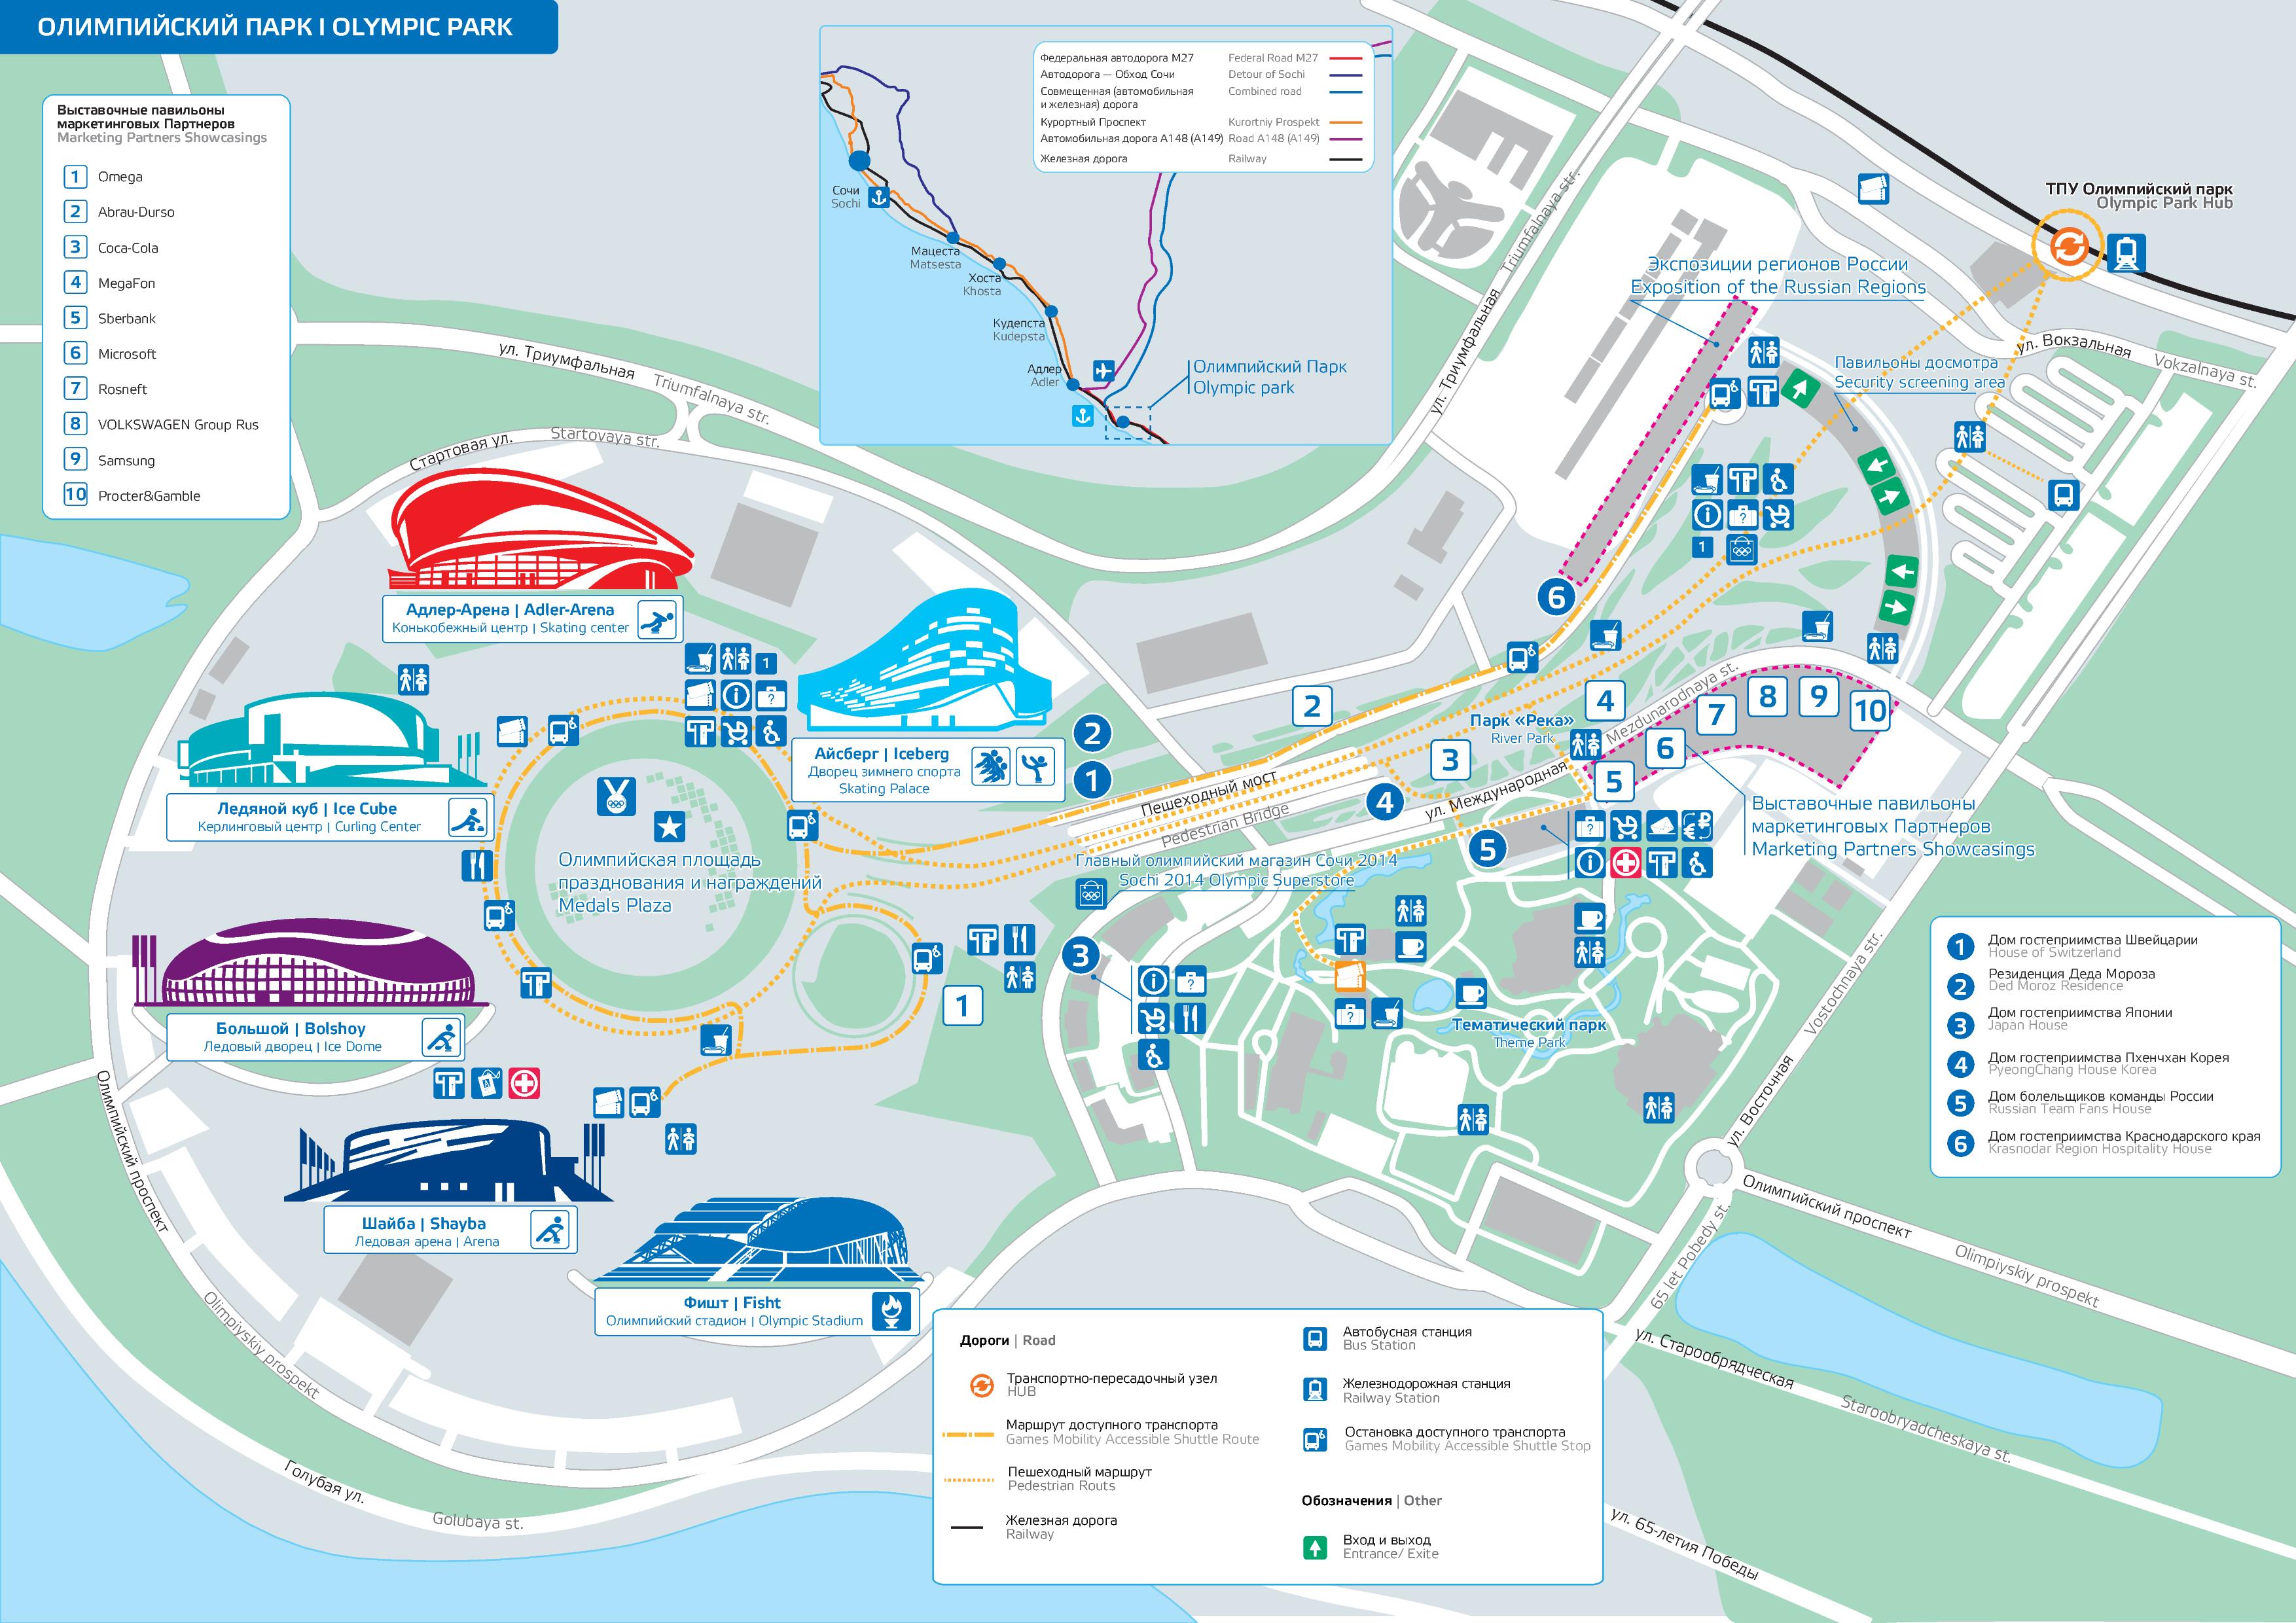 План объектов в Олимпийском парке Сочи (Адлер)